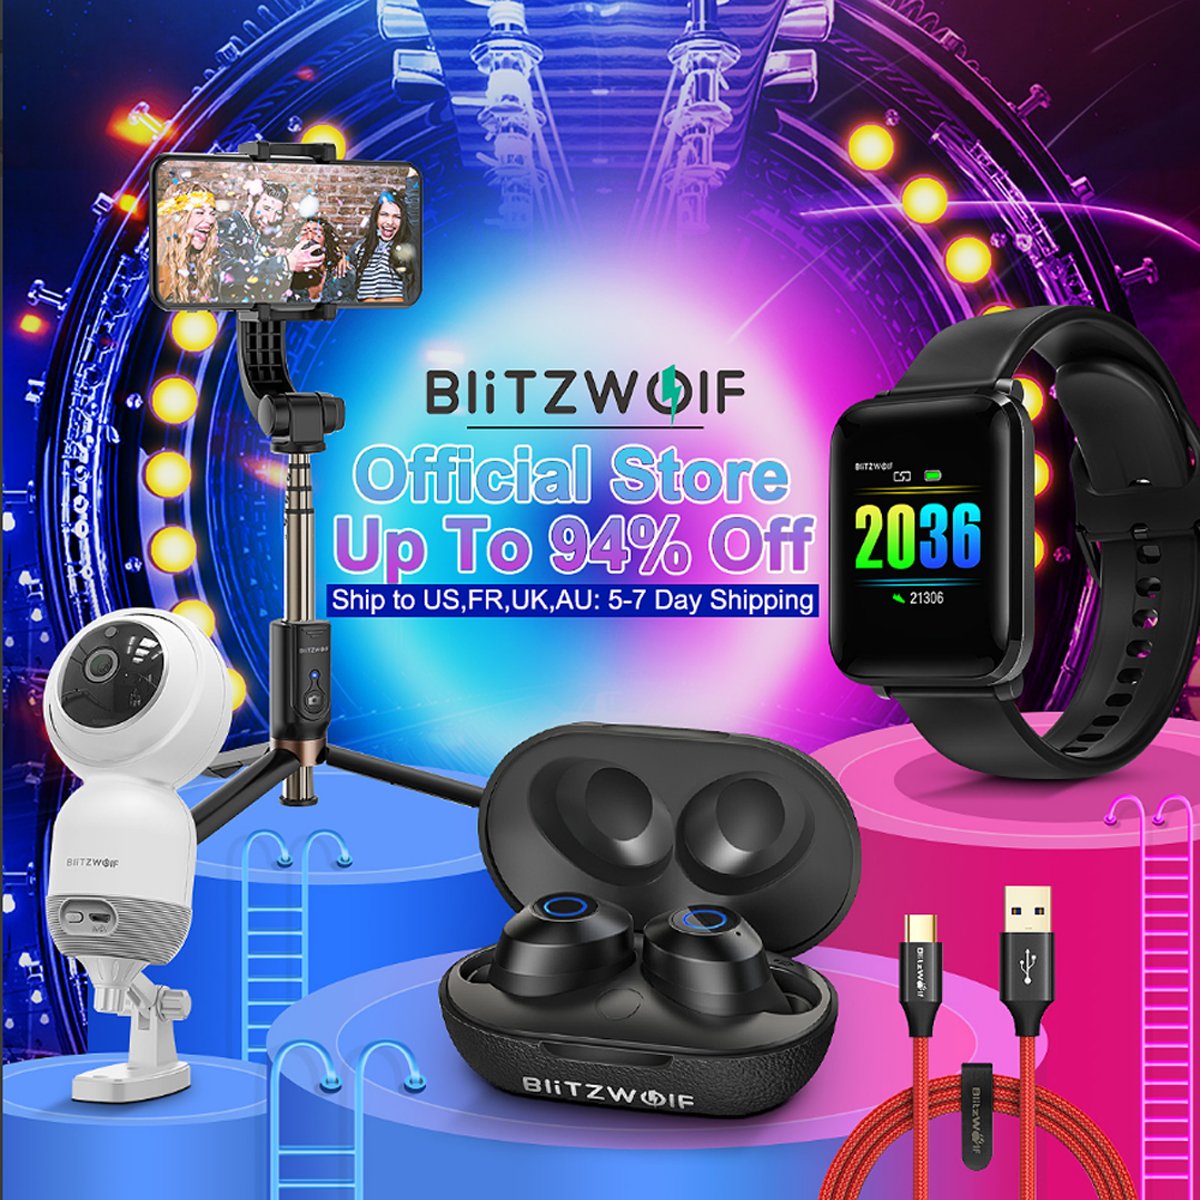 Blitzwolf Tech On Twitter Blitzwolf Official Store Up To 94